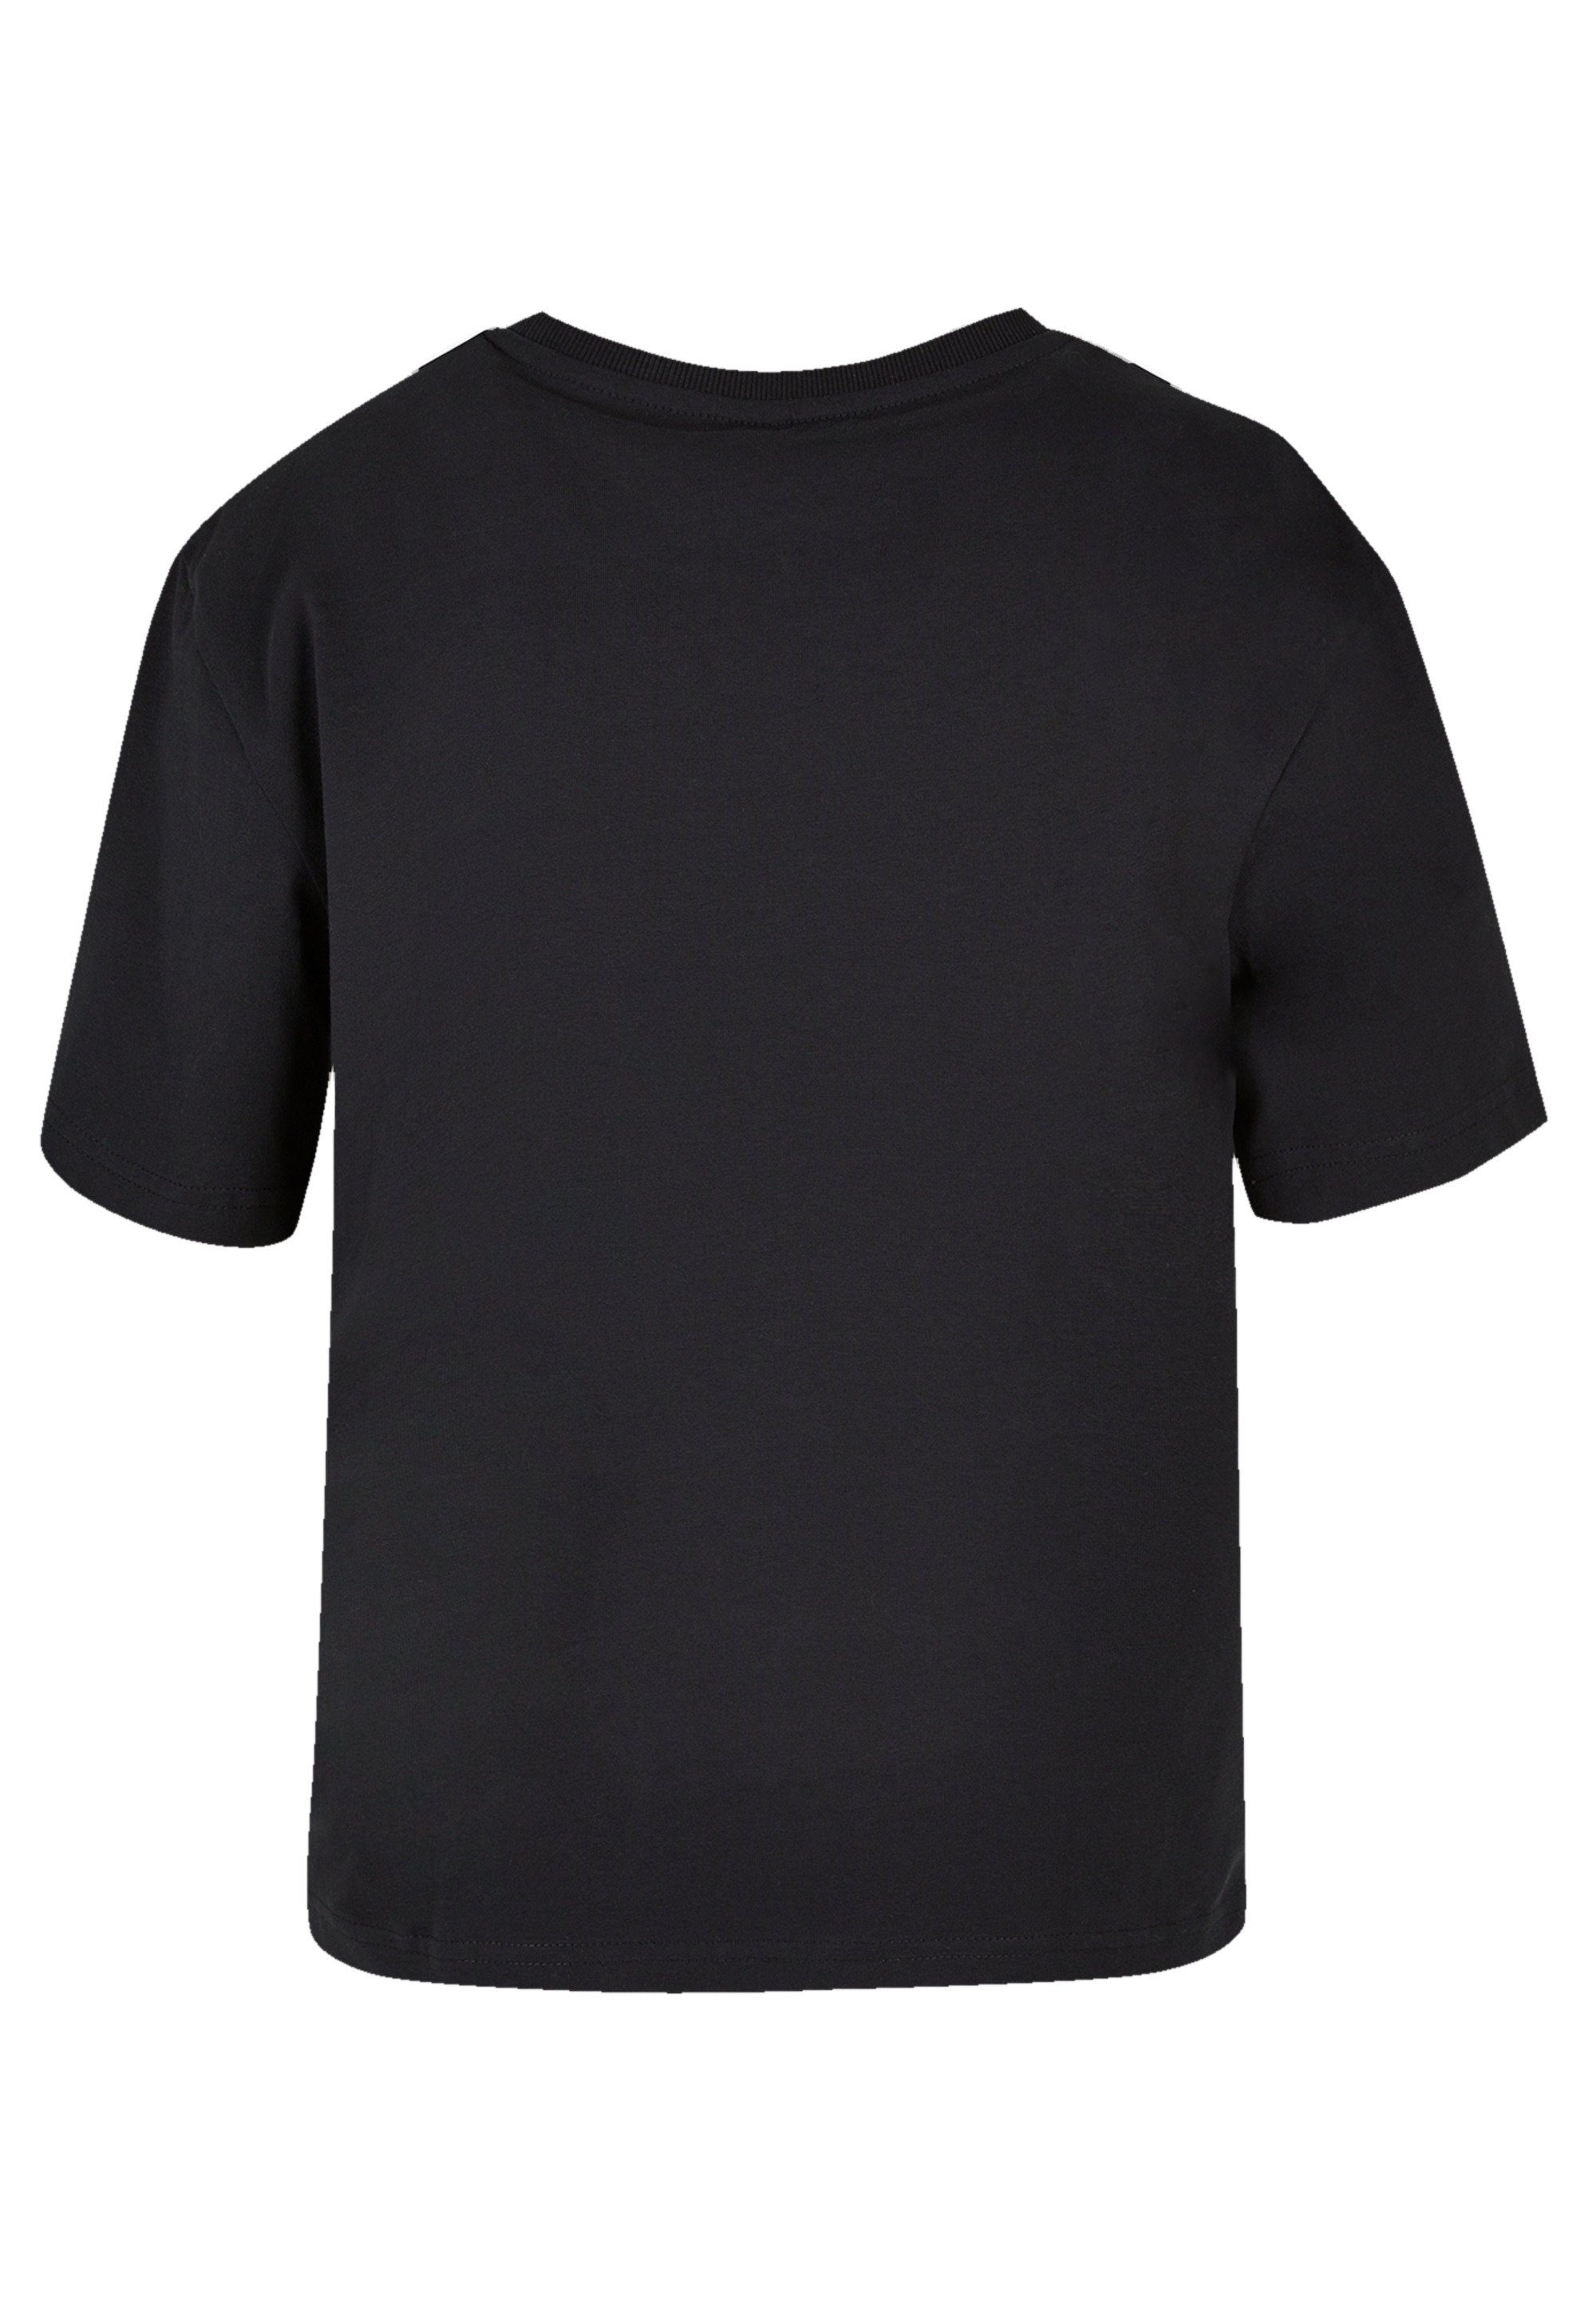 Premium F4NT4STIC T-Shirt Qualität Wars Star Turmoil